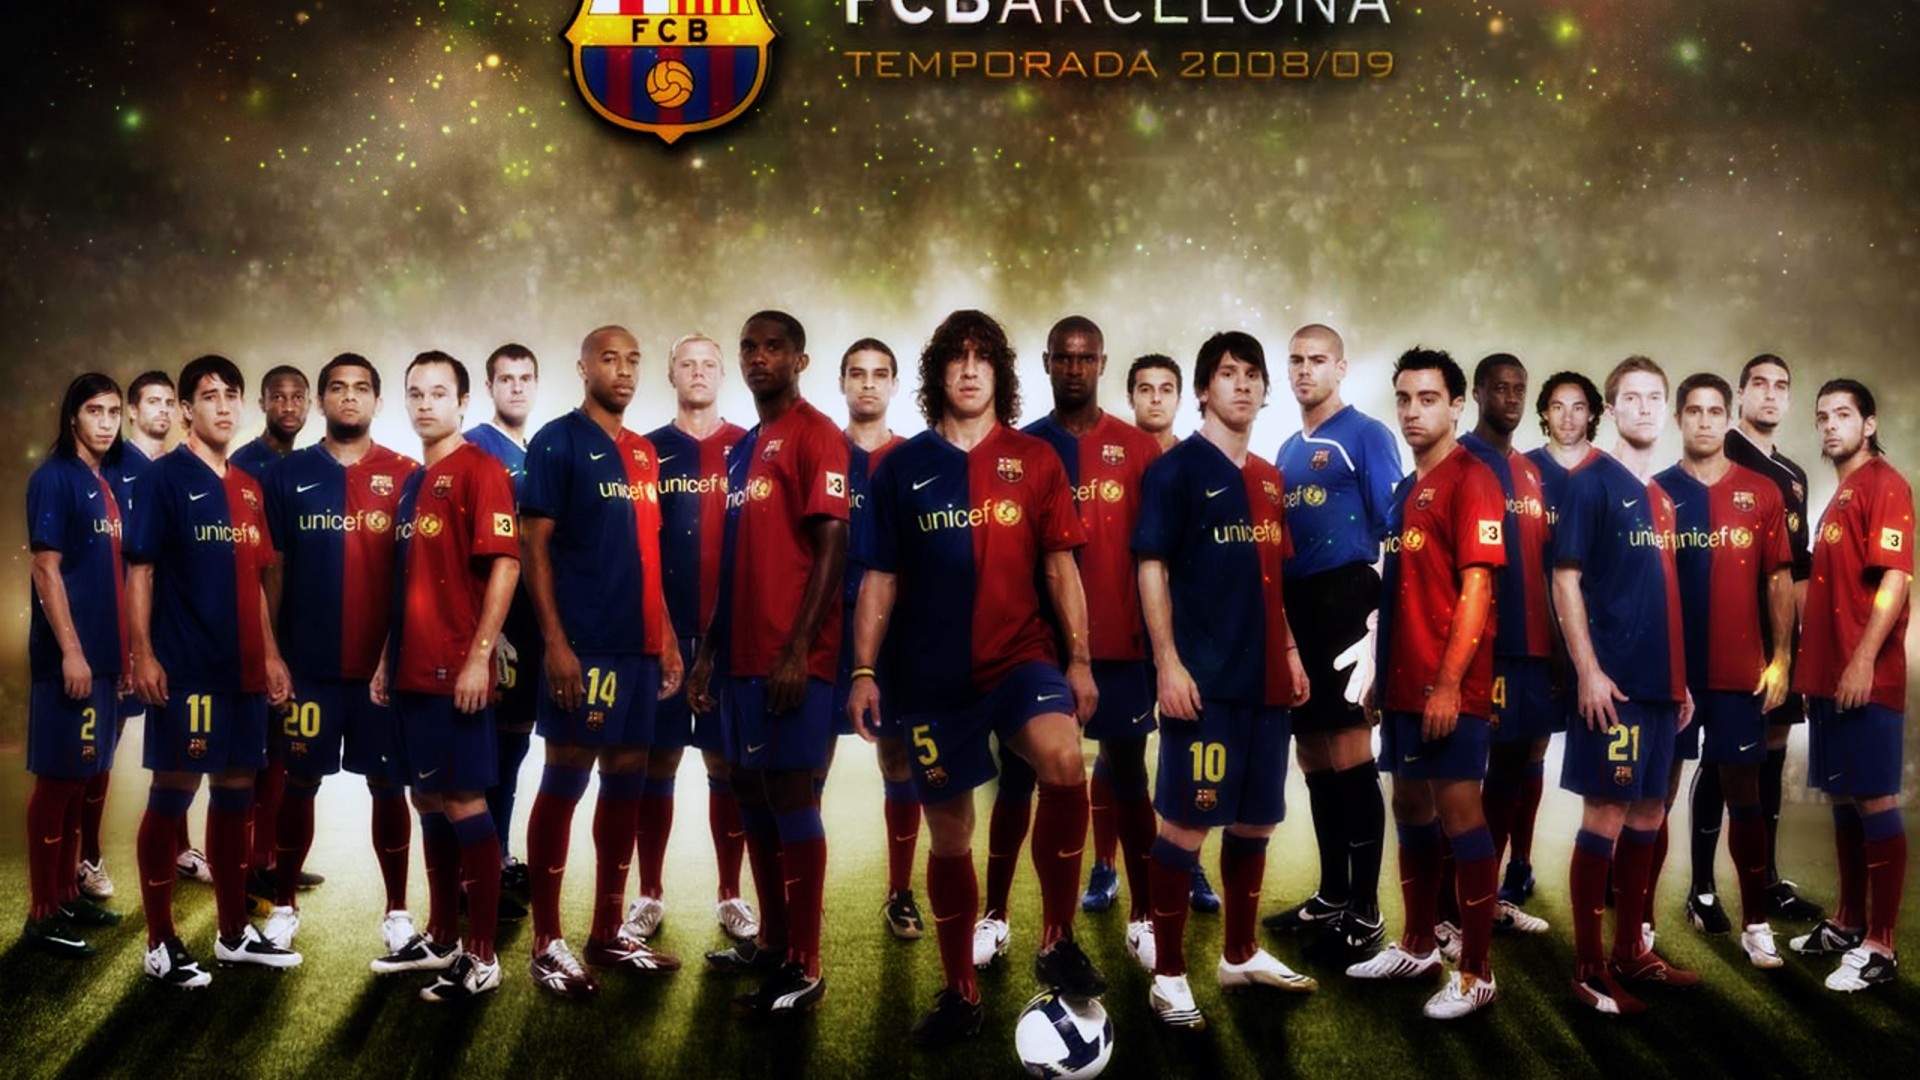 バルセロナの壁紙,チーム,サッカー選手,プレーヤー,サッカー選手,チャンピオンシップ